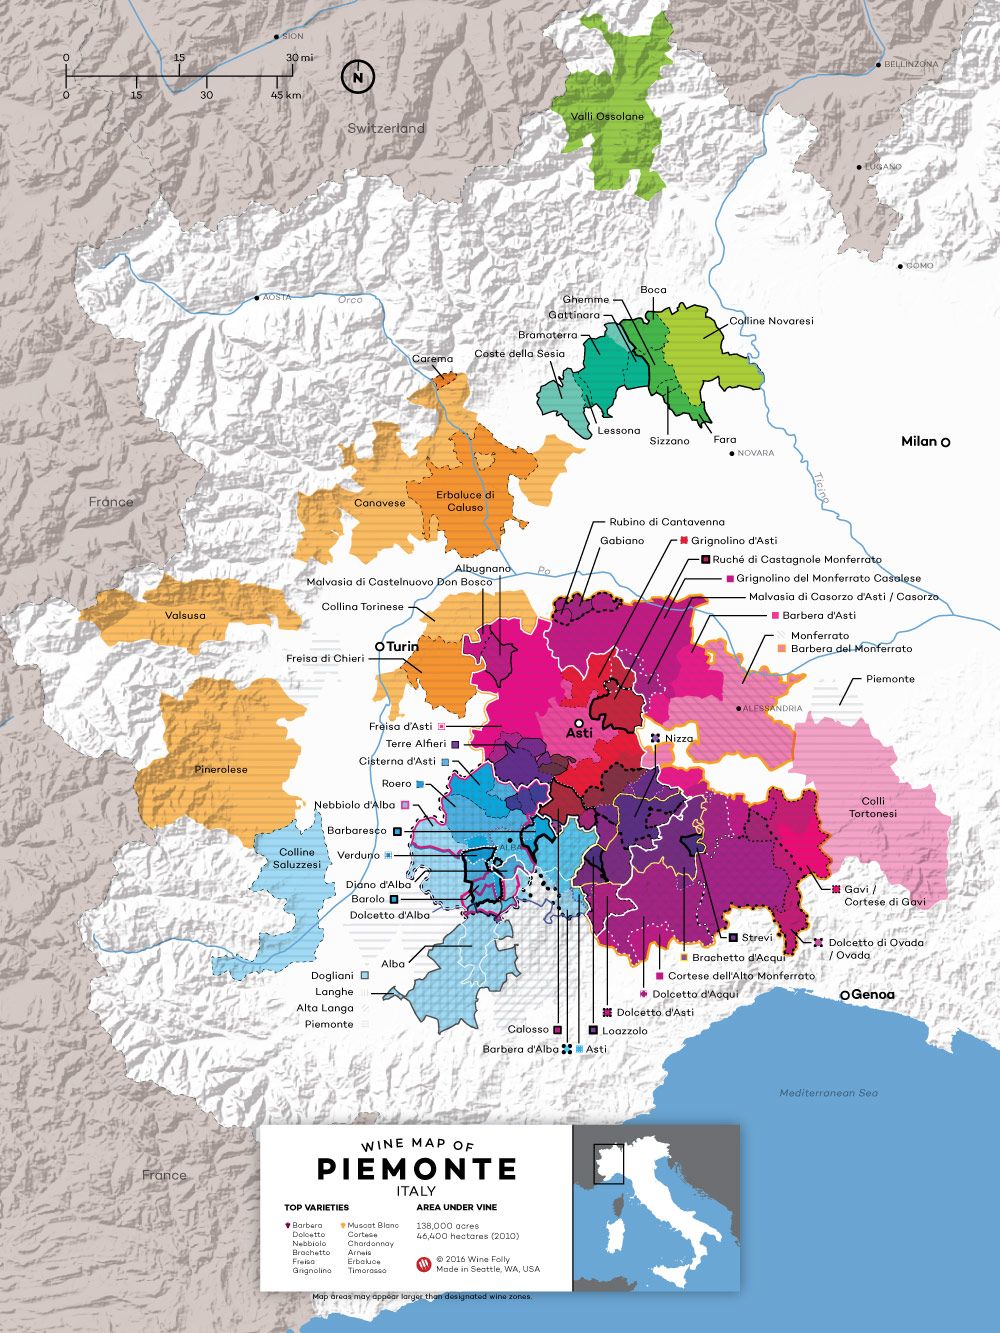 Γεγονότα κρασιού Nebbiolo - διάγραμμα ραντάρ προφίλ γεύσης από το Wine Folly